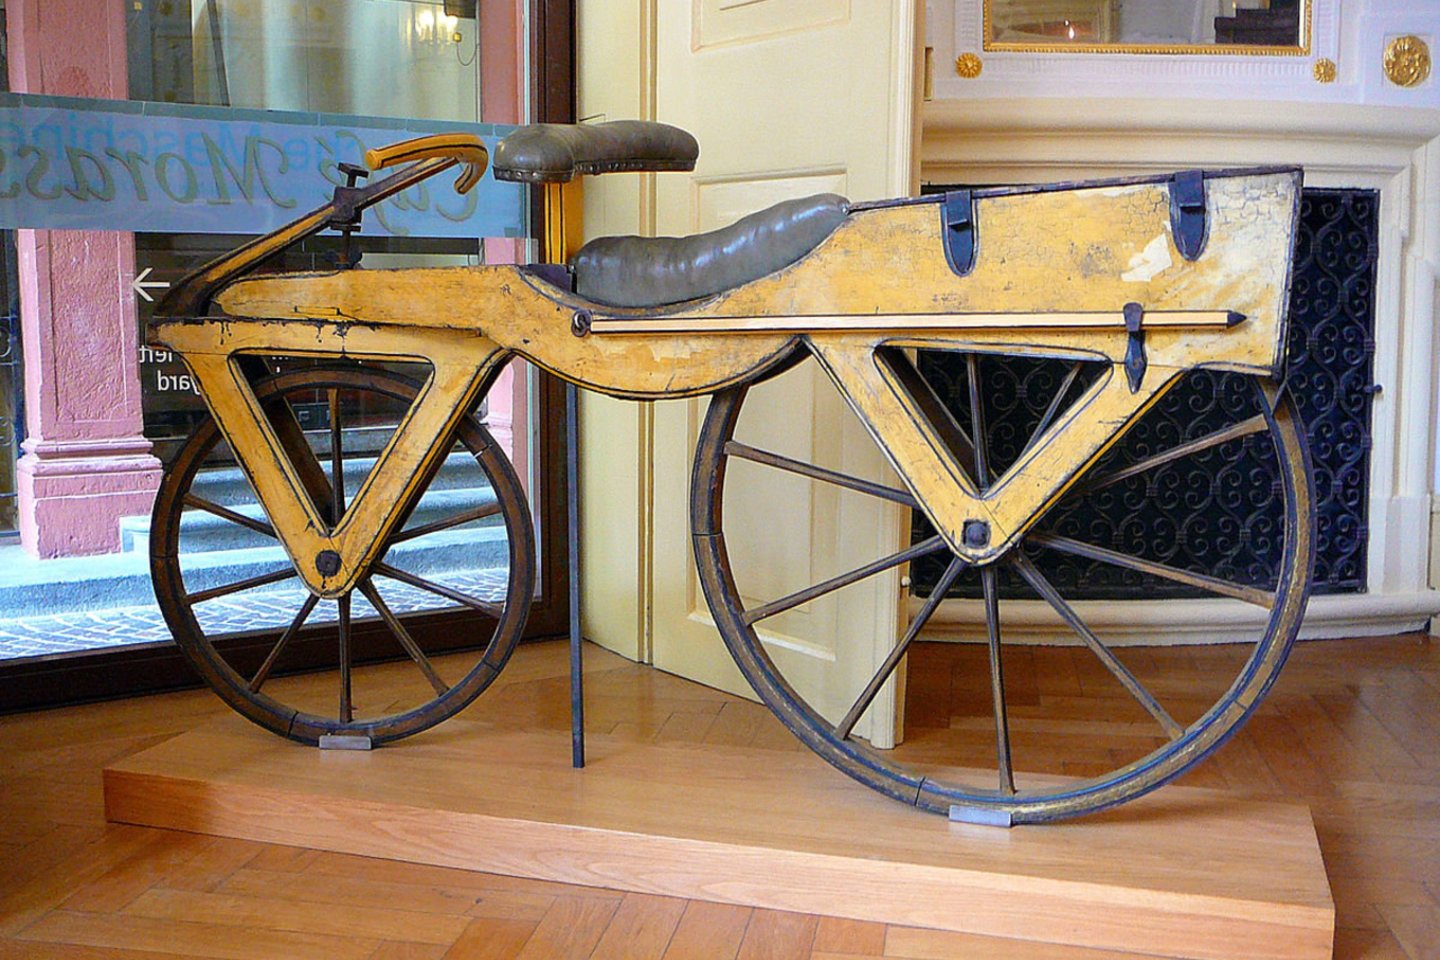 1818 m. Badeno didysis kunigaikštis suteikė vokiečių baronui Karlui Freiherriui von Draisui privilegiją gaminti šio sukonstruotą „bėgimo mašiną“ – dviračio prototipą, kuris išradėjo garbei vėliau pavadintas drezina. Draiso dviratis turėjo du ratus ir vairą, bet neturėjo pedalų.<br>wikipedia